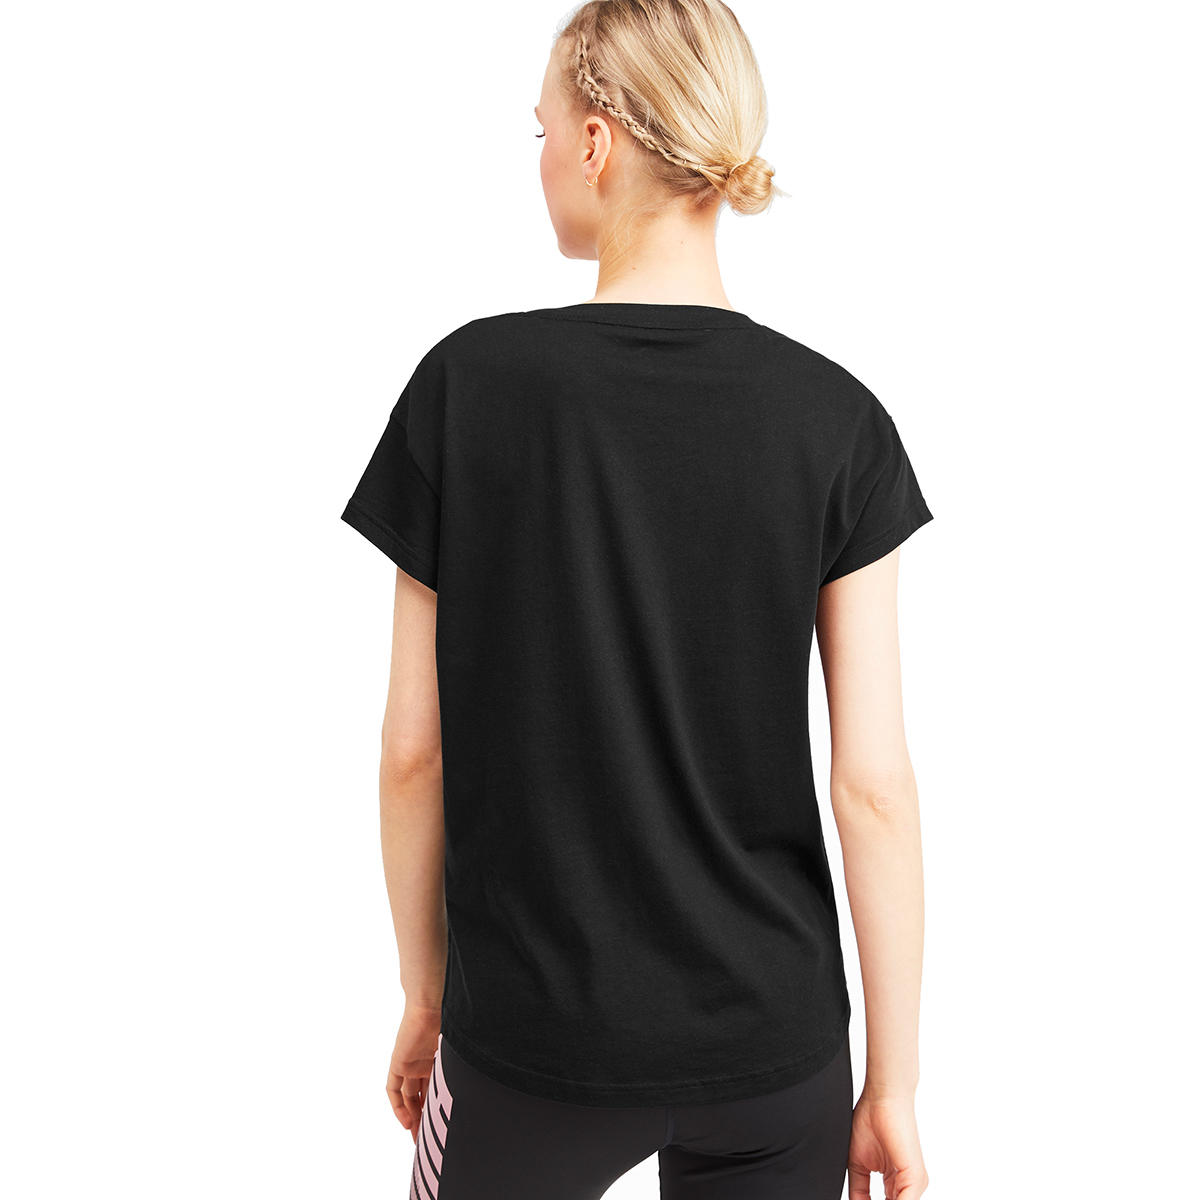 PUMA Damen Modern Sports Graphic Tee DryCell T-Shirt schwarz 580075 01